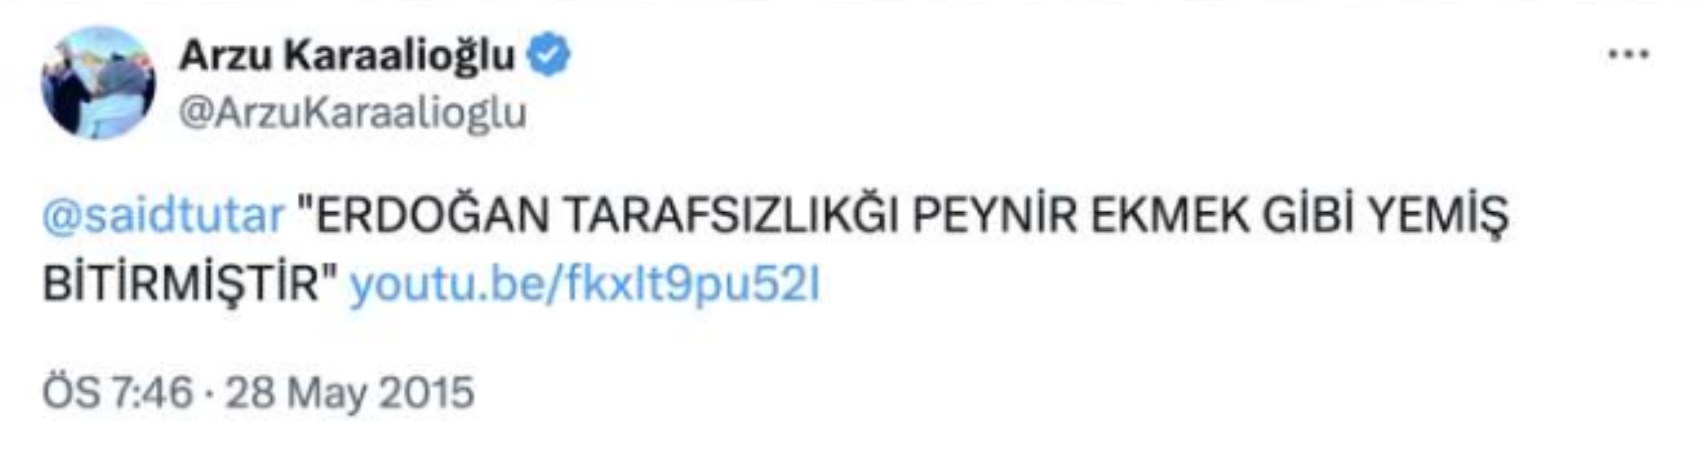 İşte İmamoğlu'na 'geri bas' diyen MHP'li Karaalioğlu'nun arşivi: 'Erdoğan' hakkındaki paylaşımları ortaya çıktı